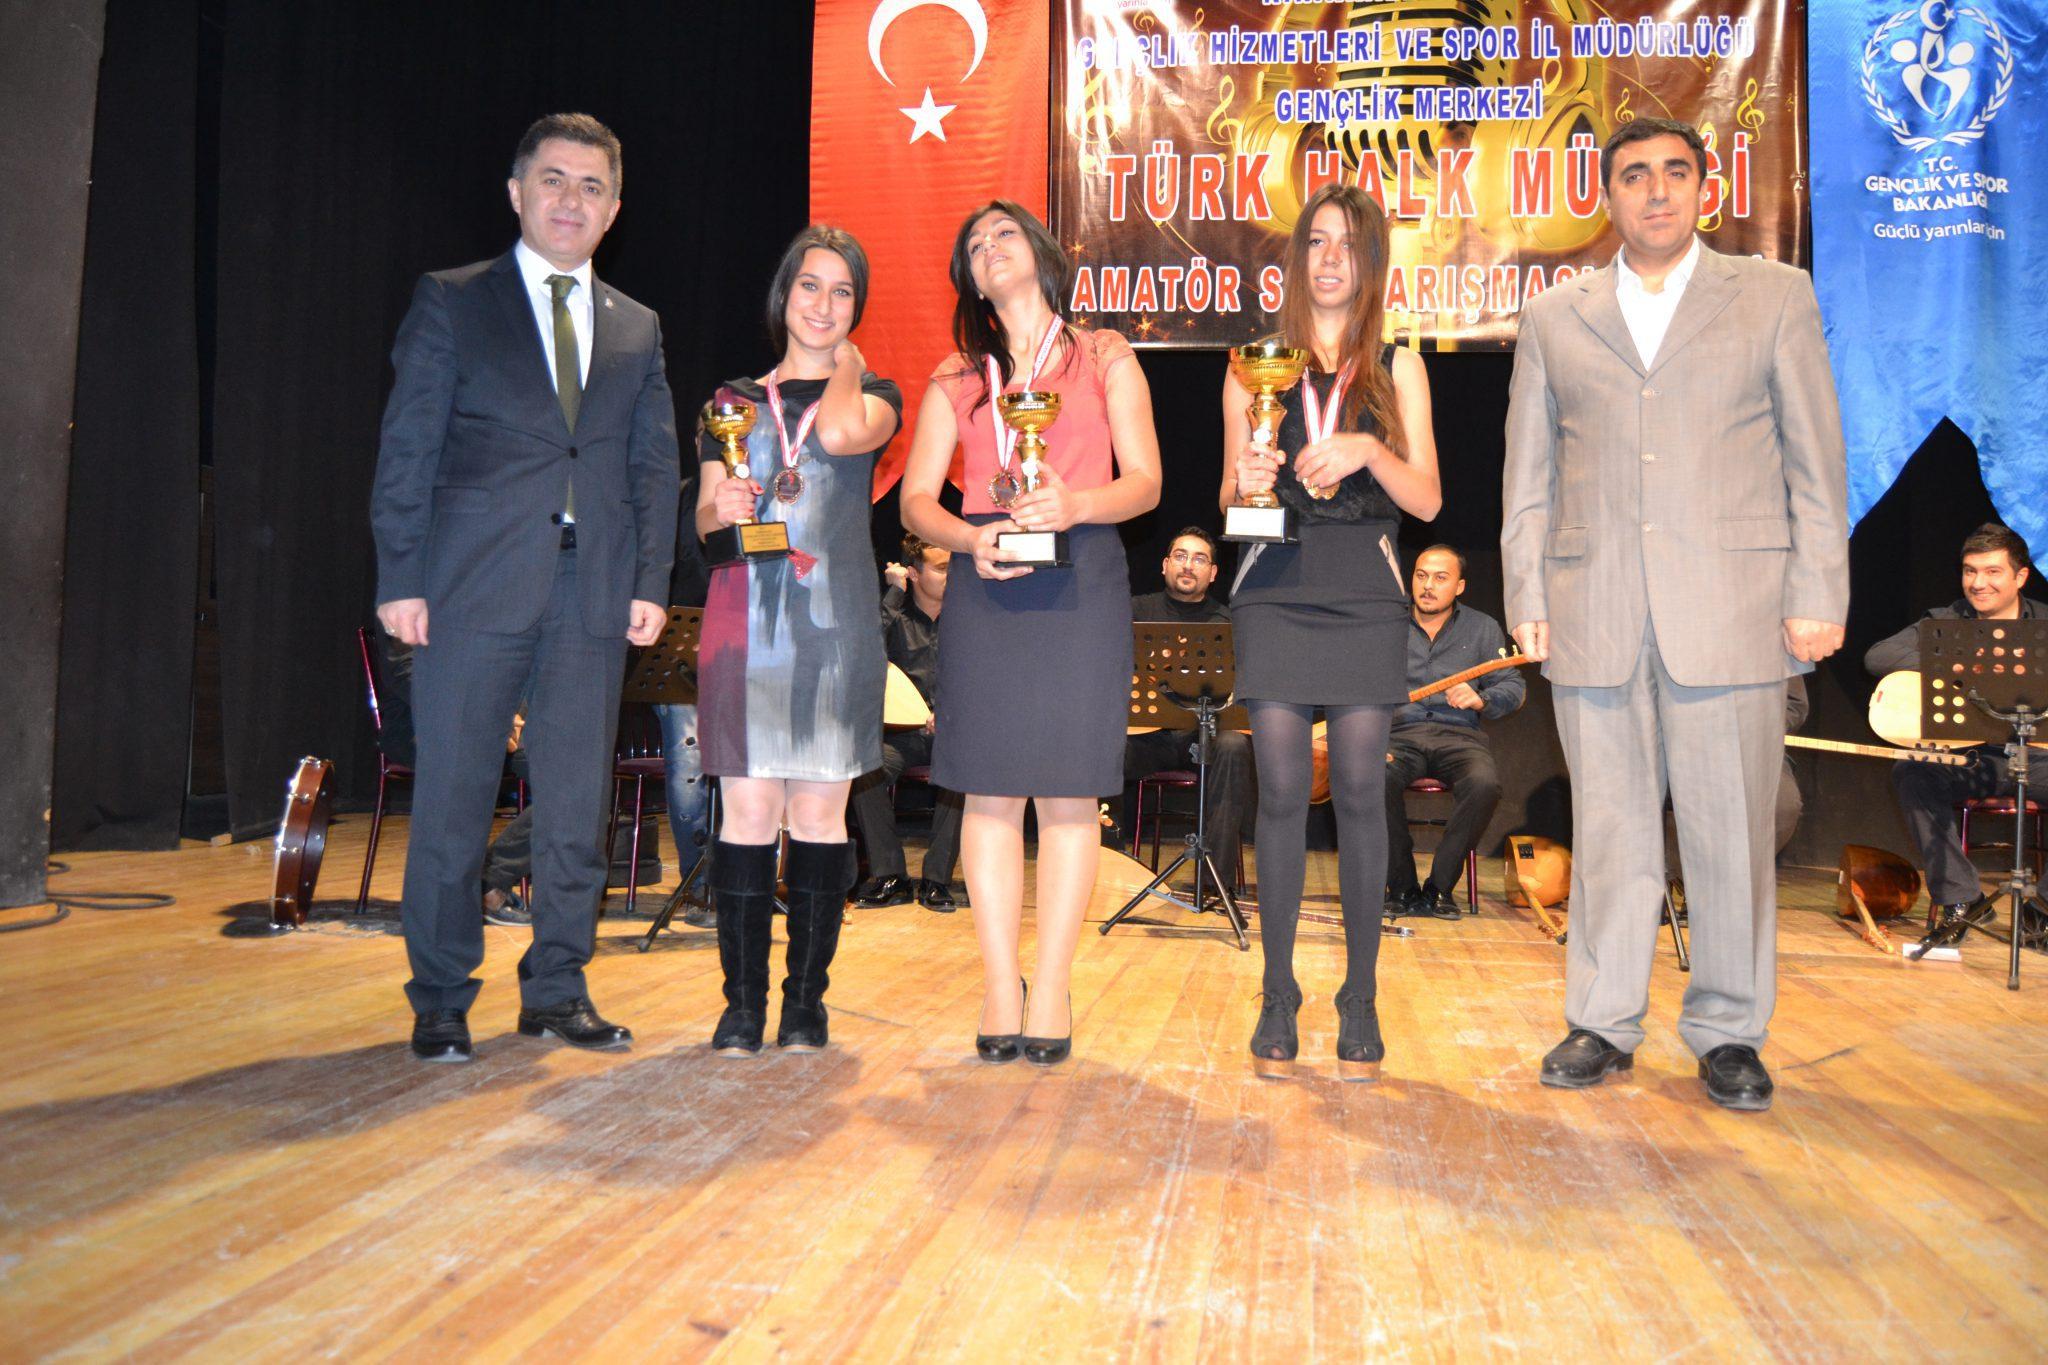 Türküler yarıştı - Kırıkkale Haber, Son Dakika Kırıkkale Haberleri